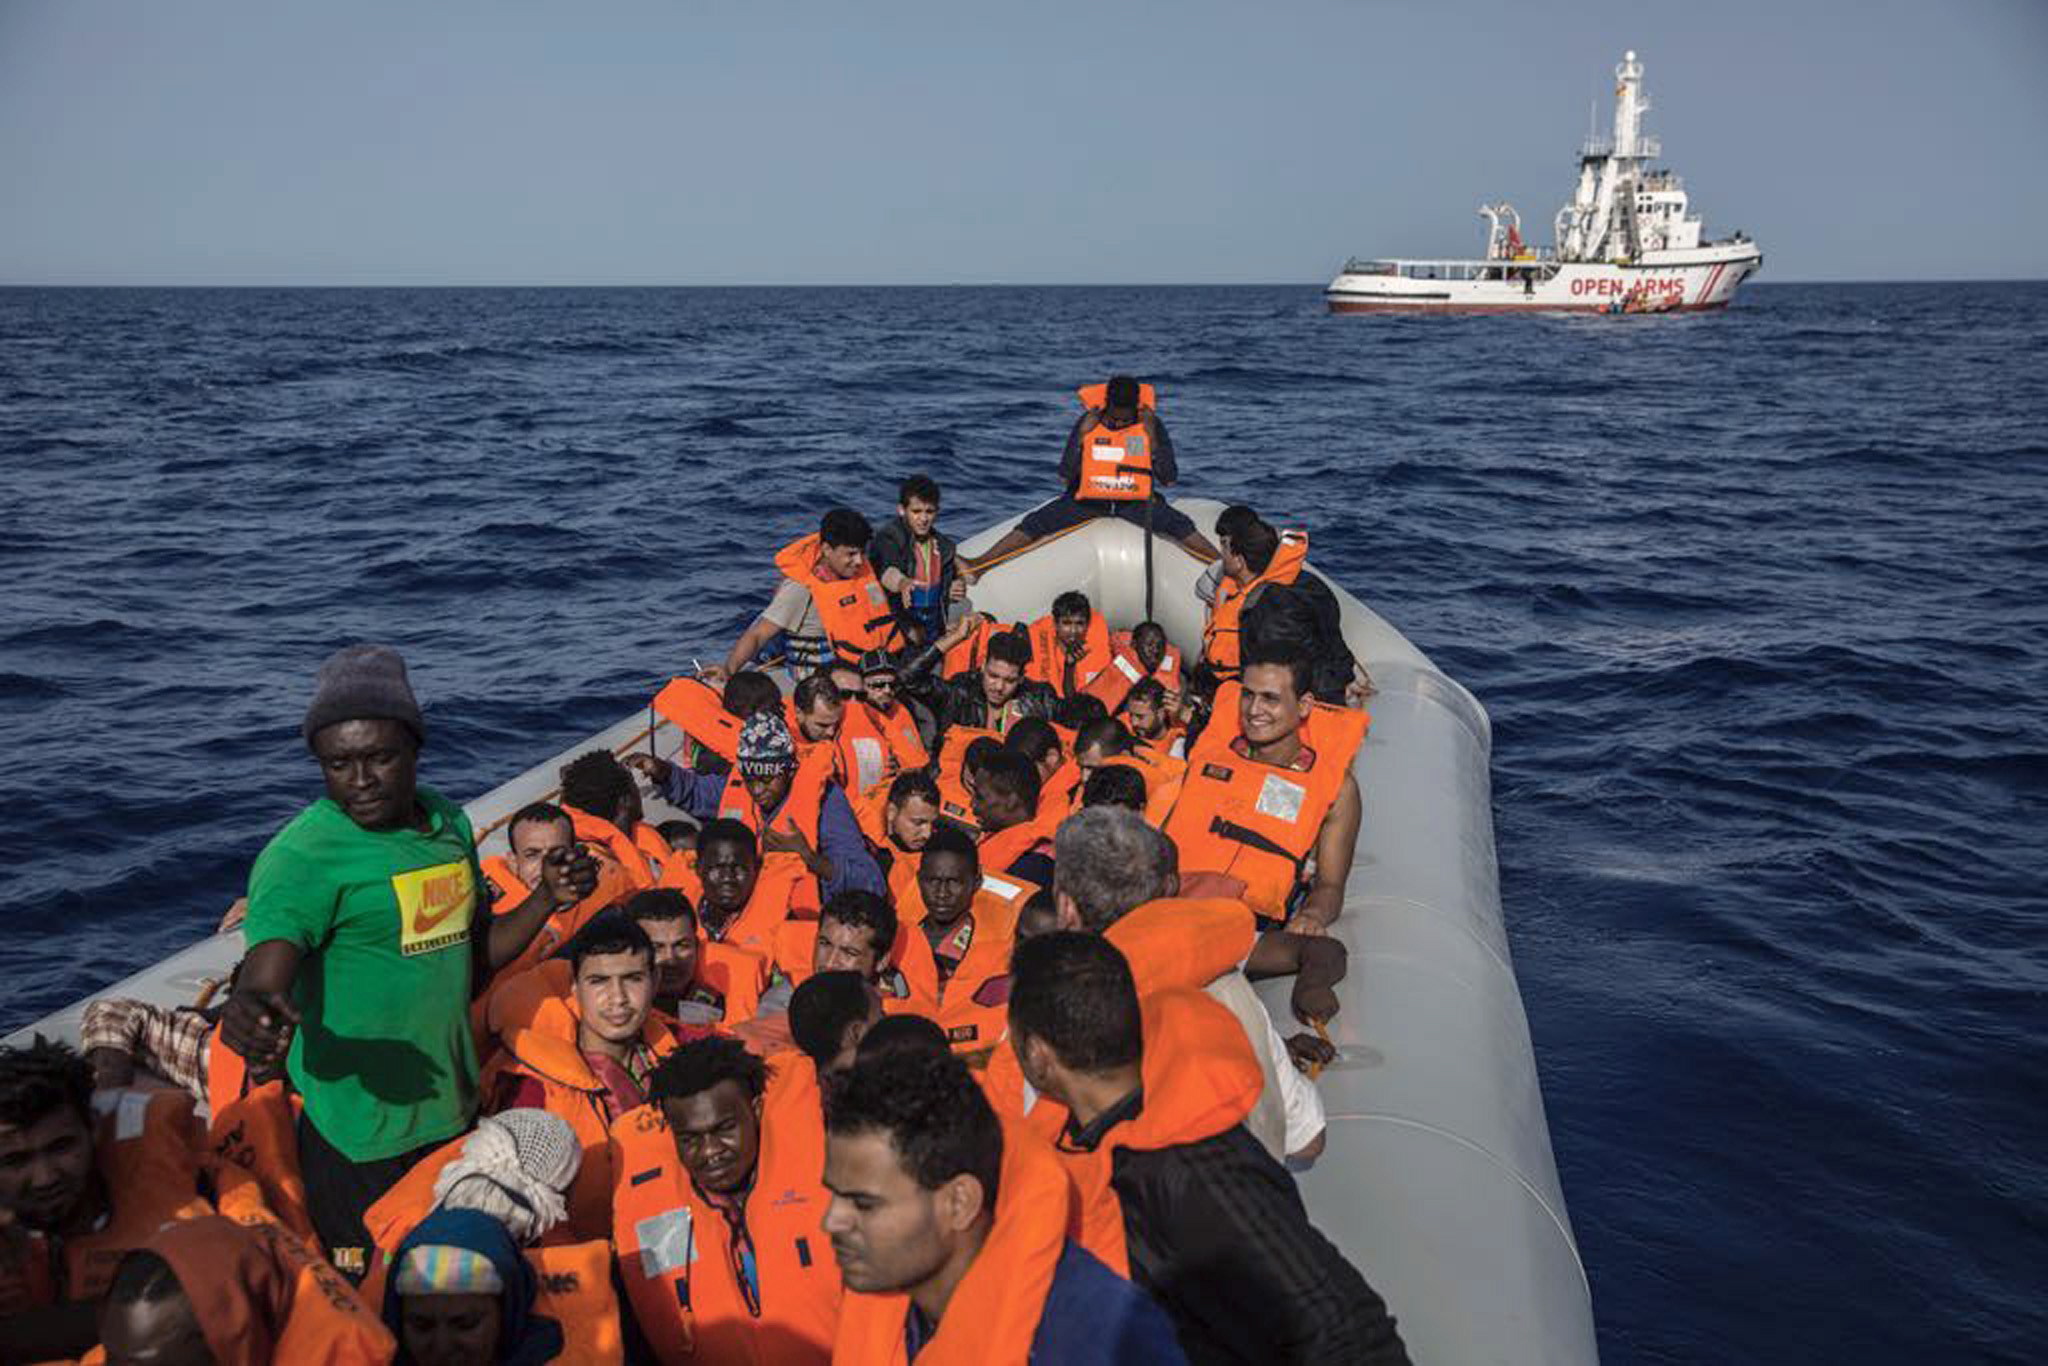 Η Ιταλία ζήτησε να πληρώνει η ΕΕ την Λιβύη για να μην στέλνει μετανάστες – Διαψεύδει ο Μ.Ντράγκι